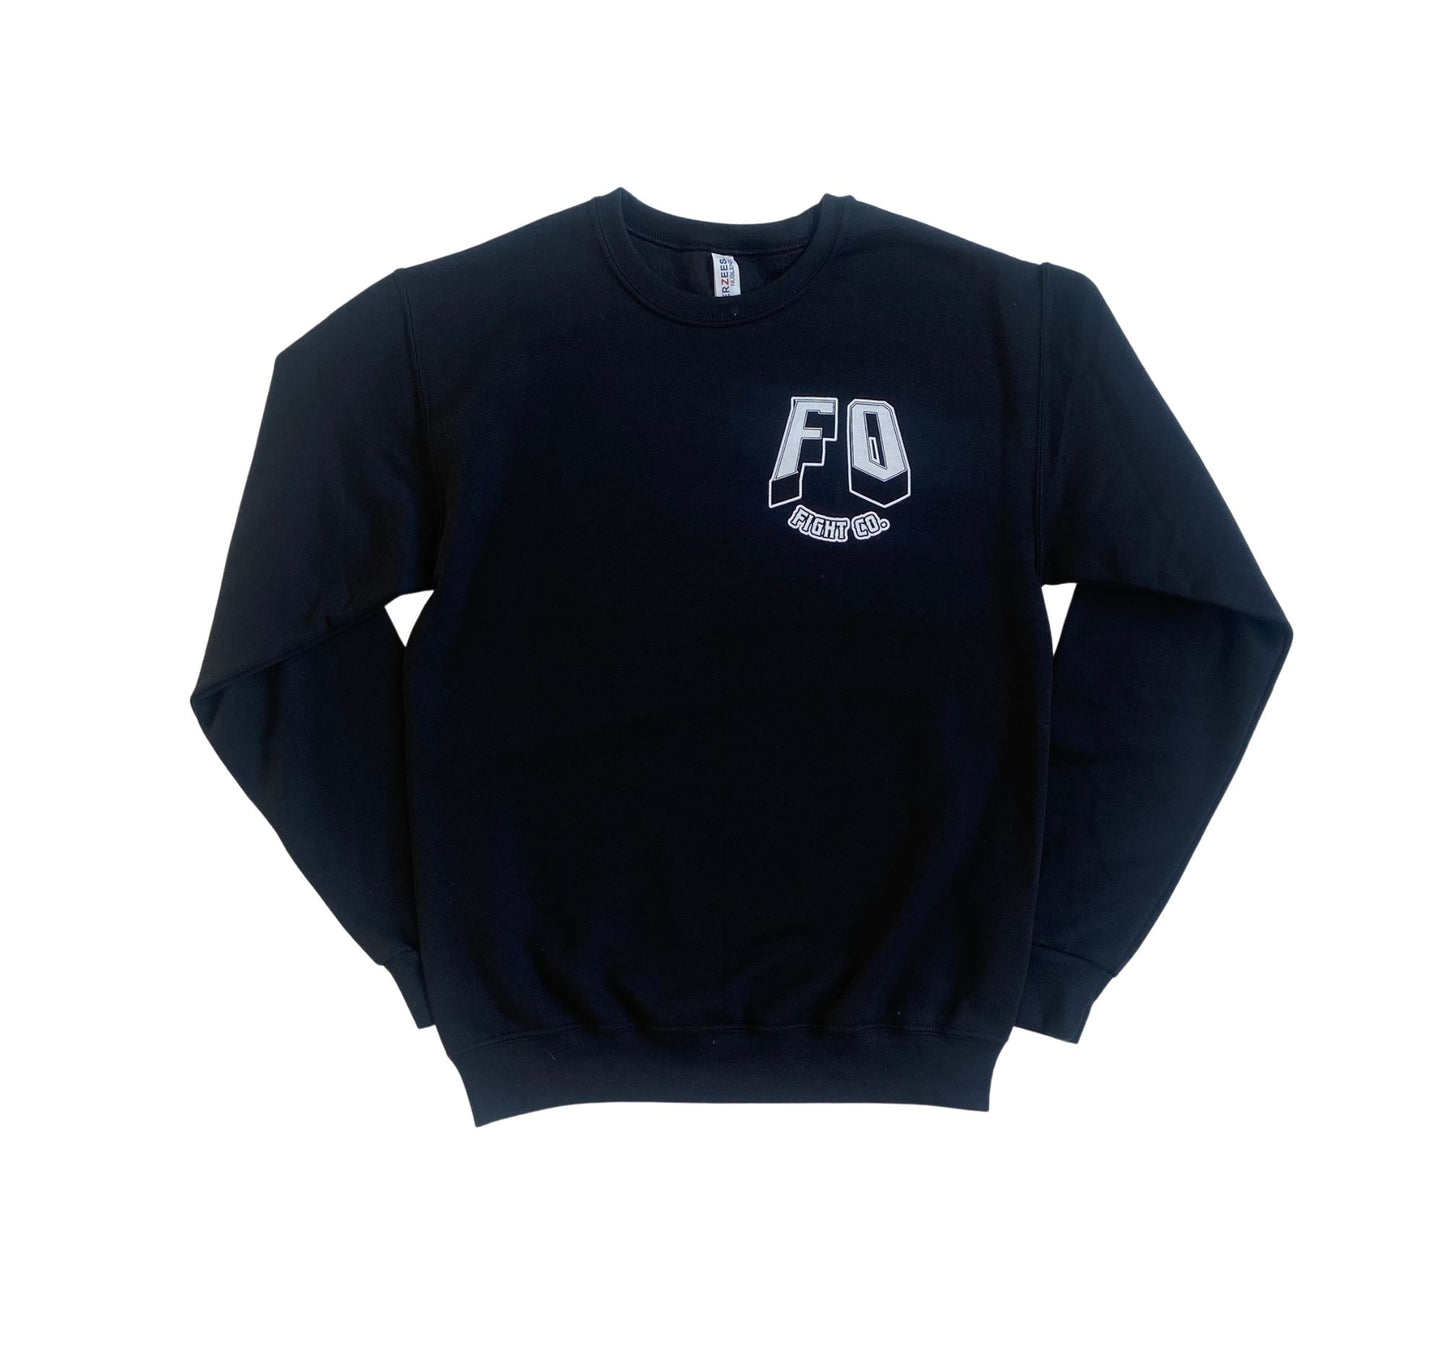 FOFCO Crew Neck Sweater